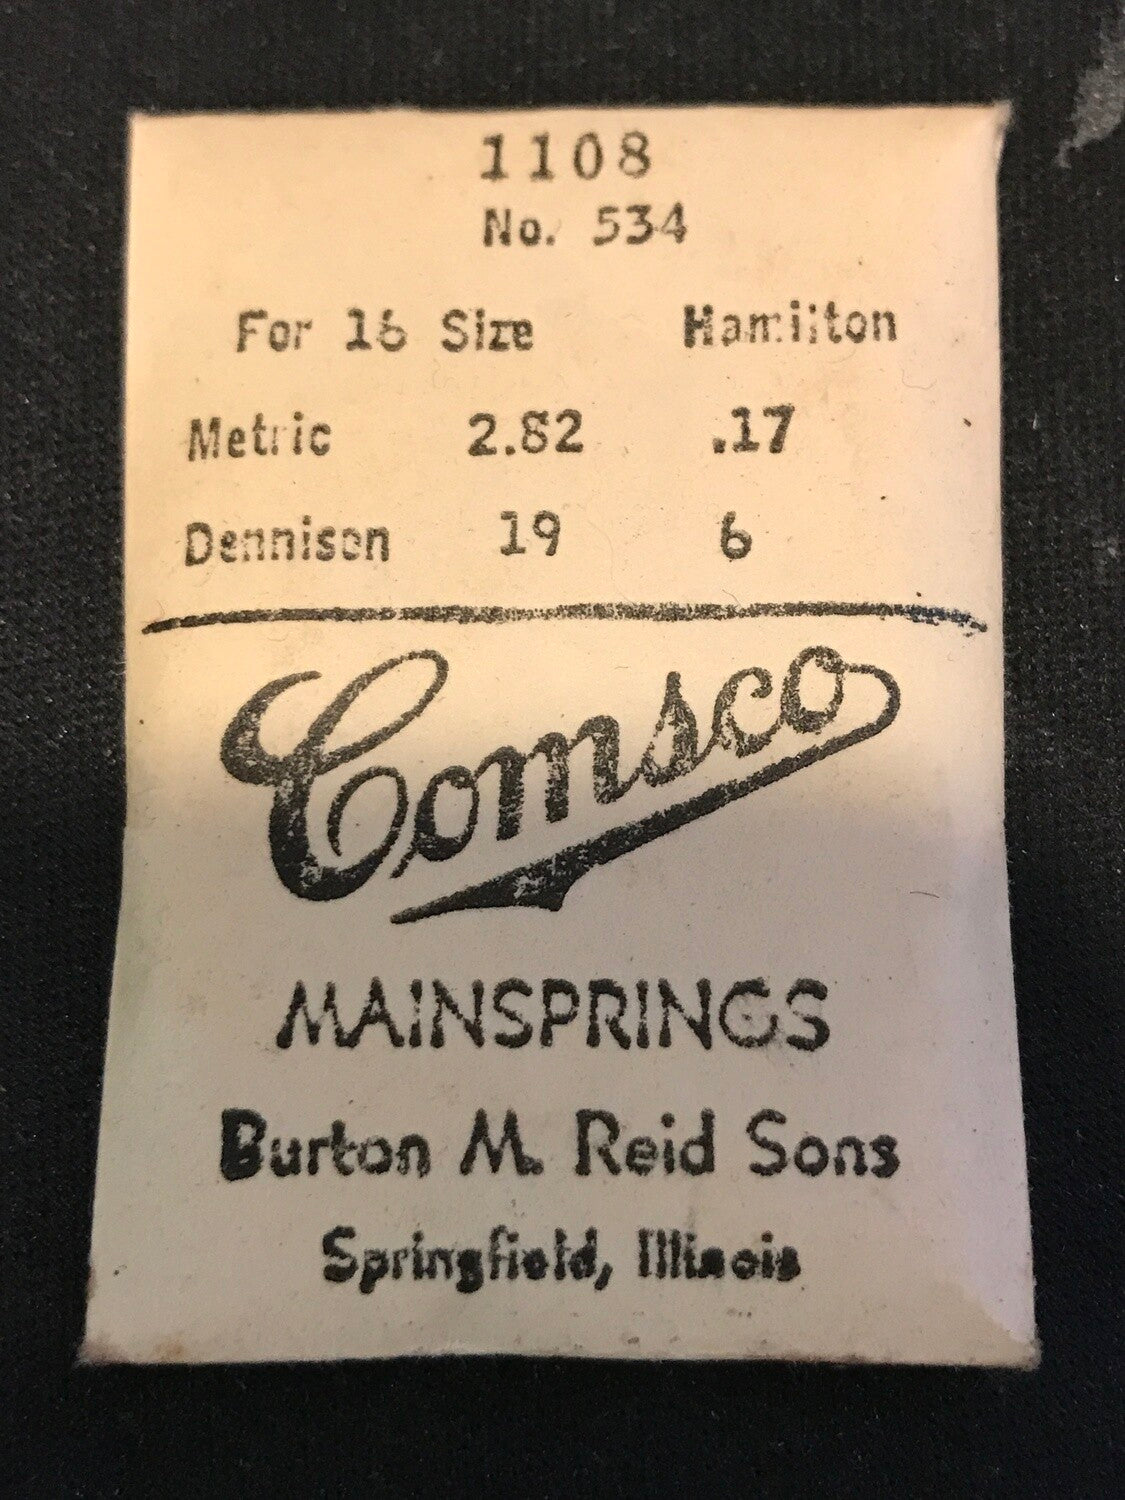 Comsco Mainspring #1108 for Hamilton 16s Factory No. 534 - Steel